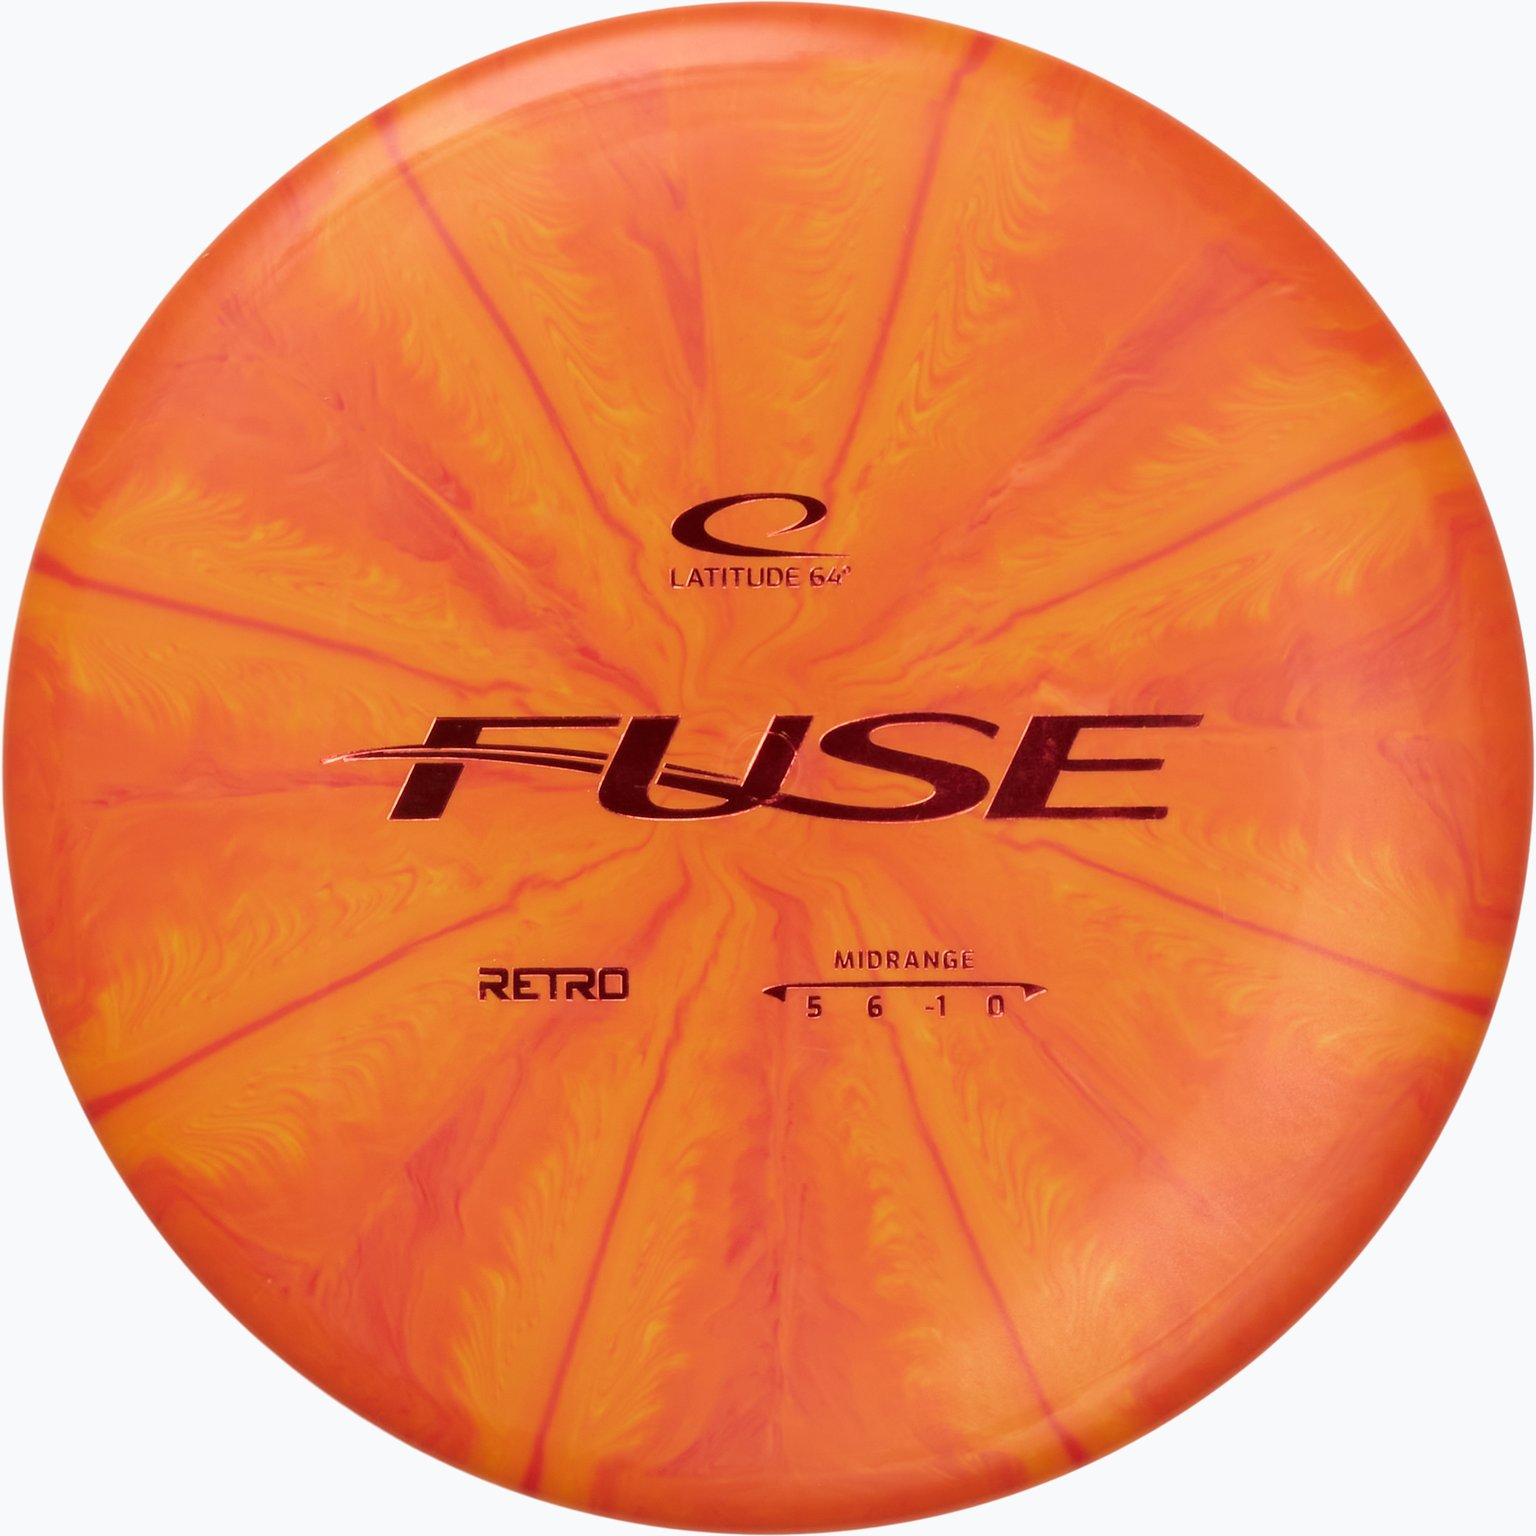 Fuse Retro Burst Midrange disc